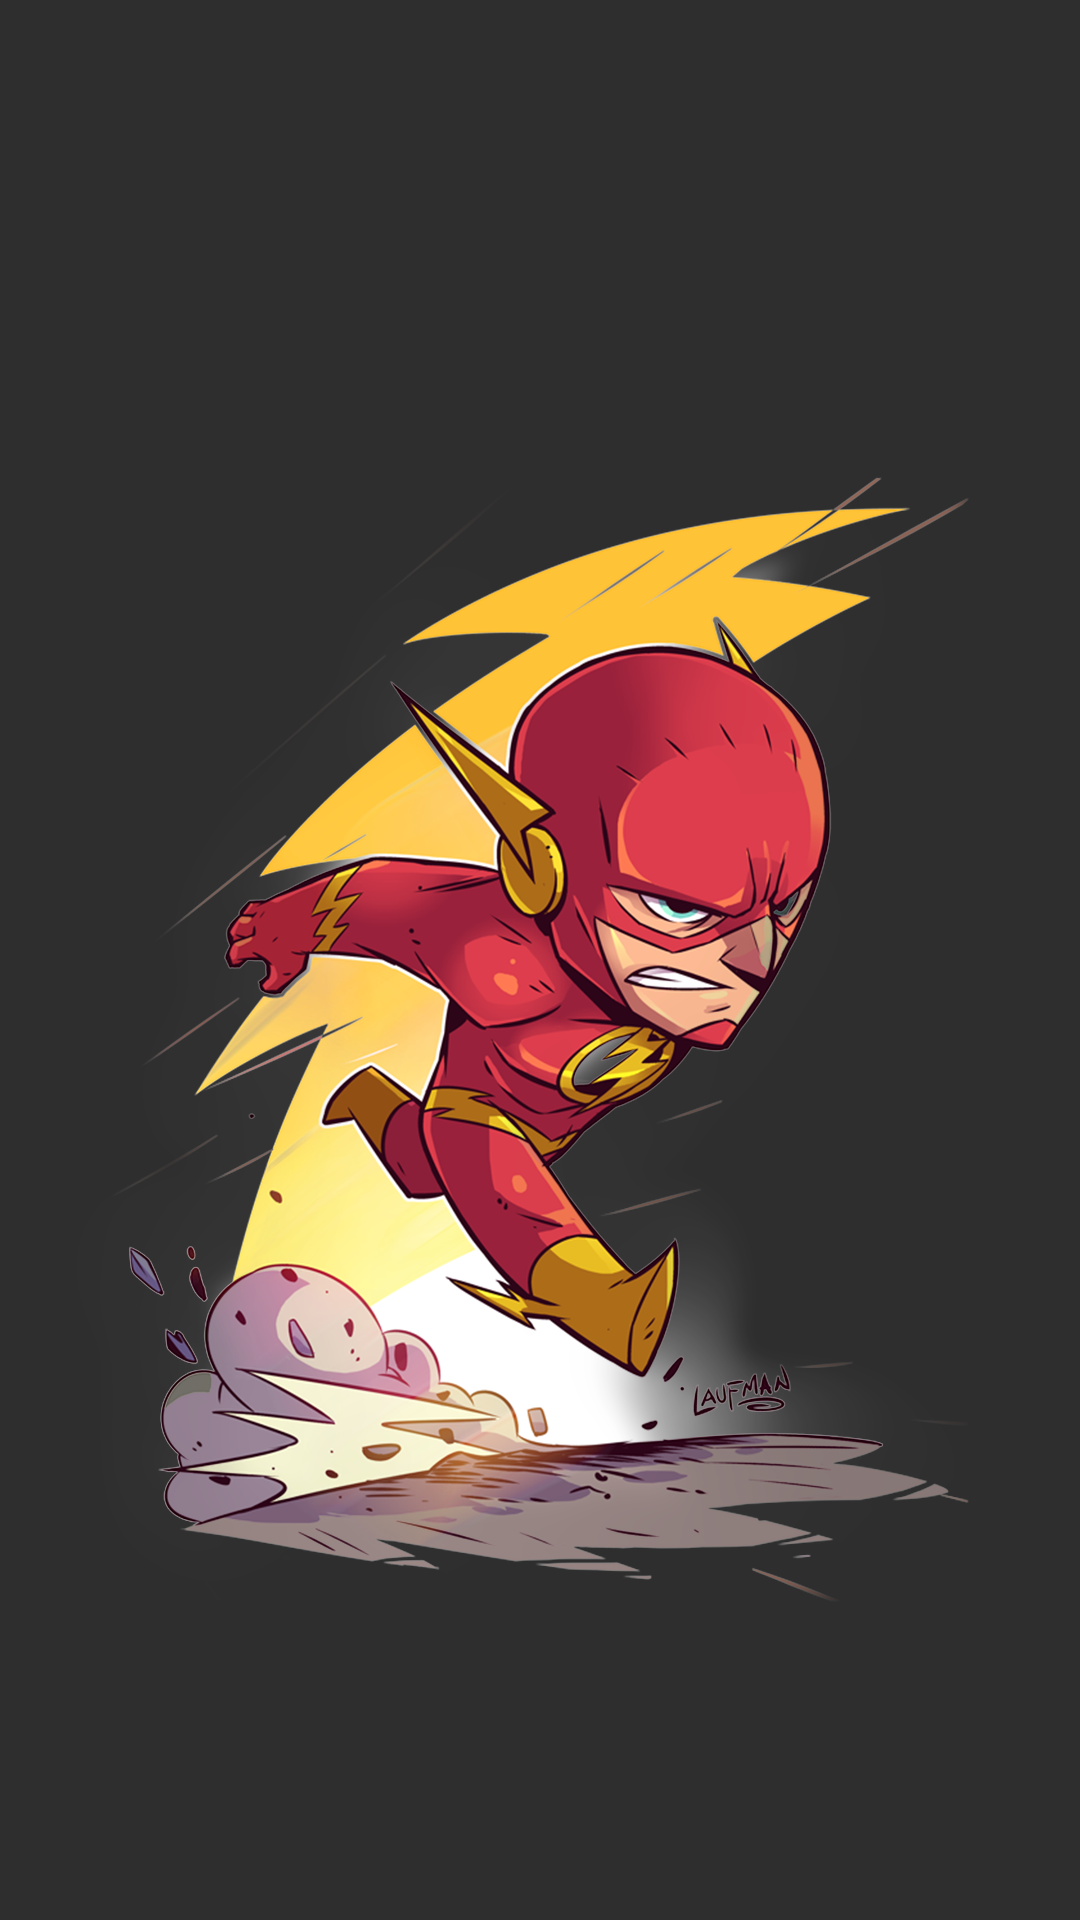 #Flash, #DC Comics, #superhero, wallpaper. Mocah.org HD Desktop Wallpaper